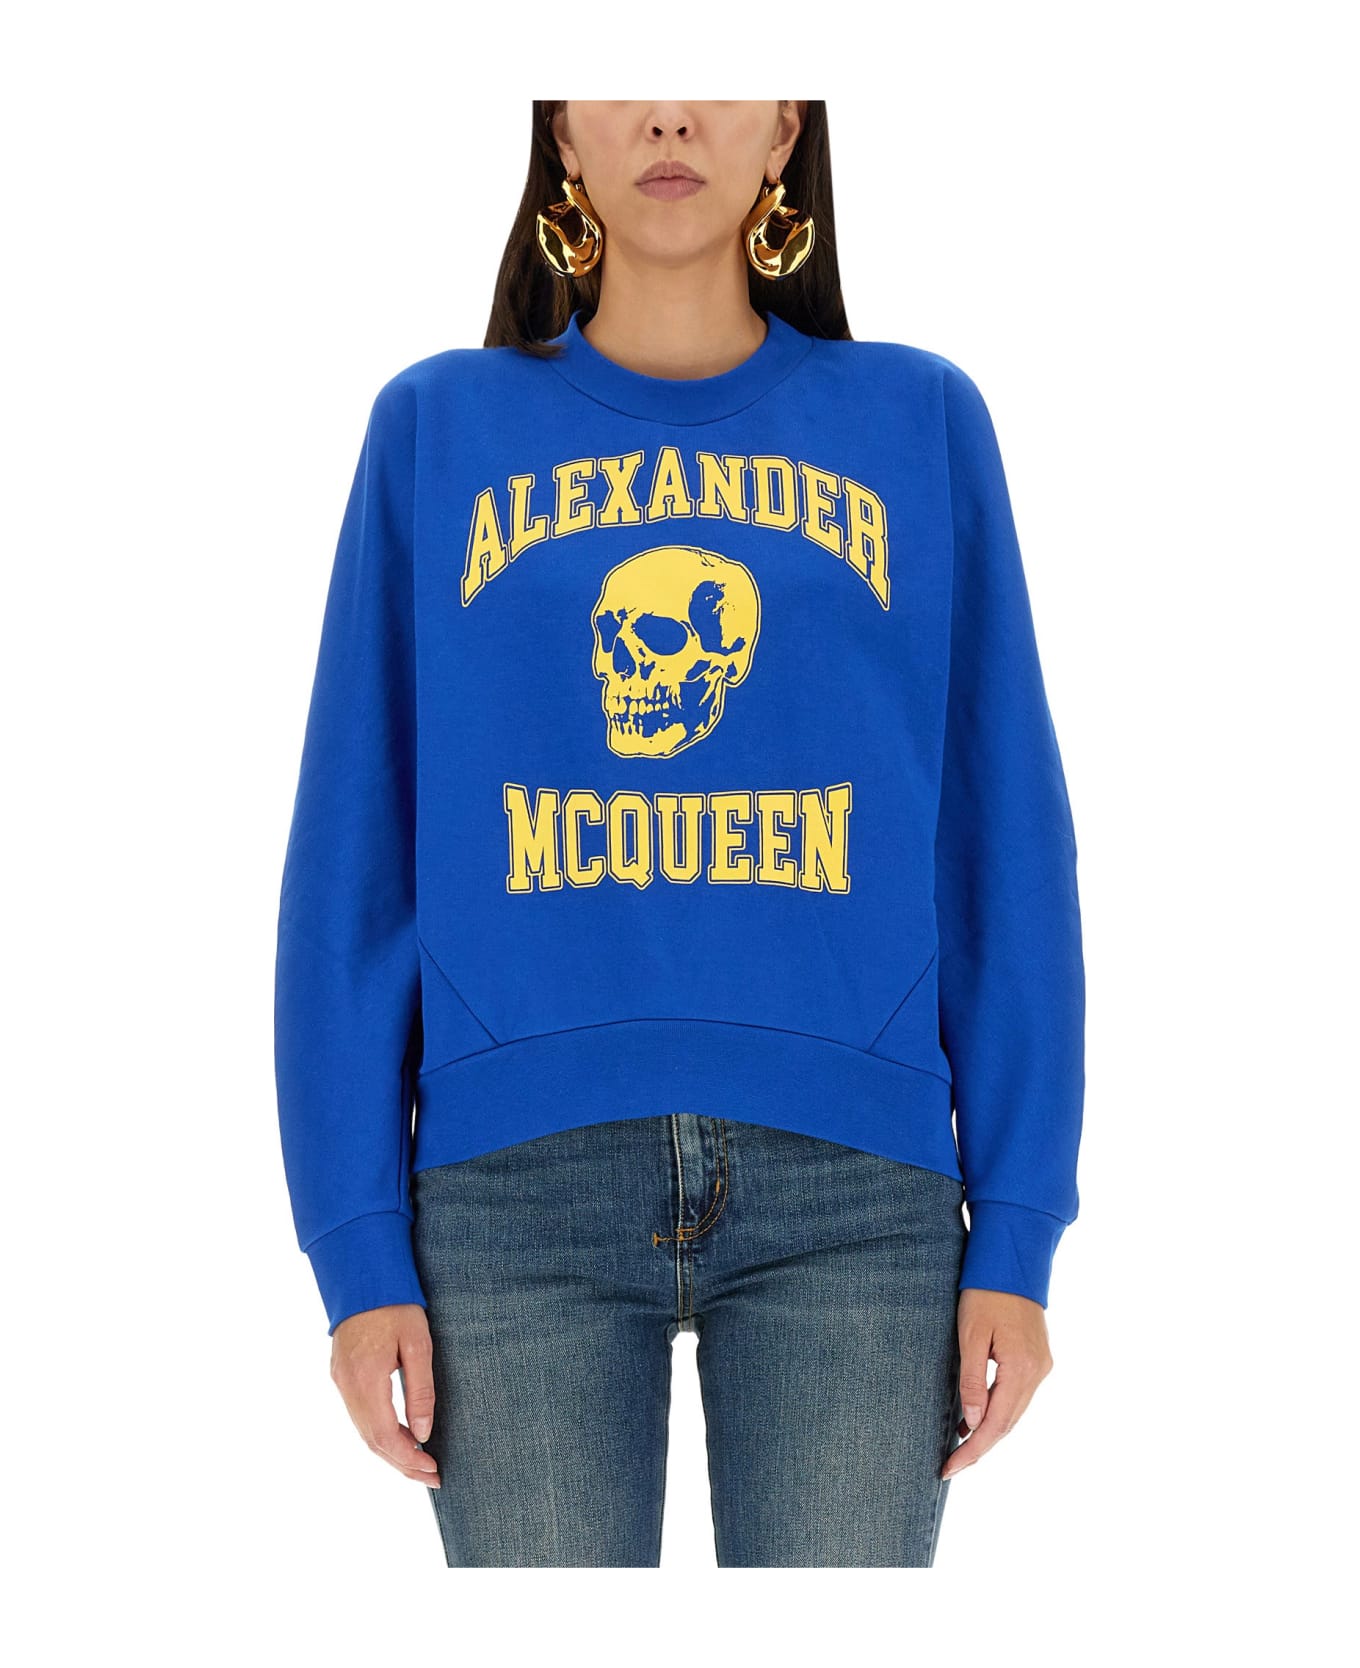 Alexander McQueen Varsiity Skull Sweatshirt - BLU